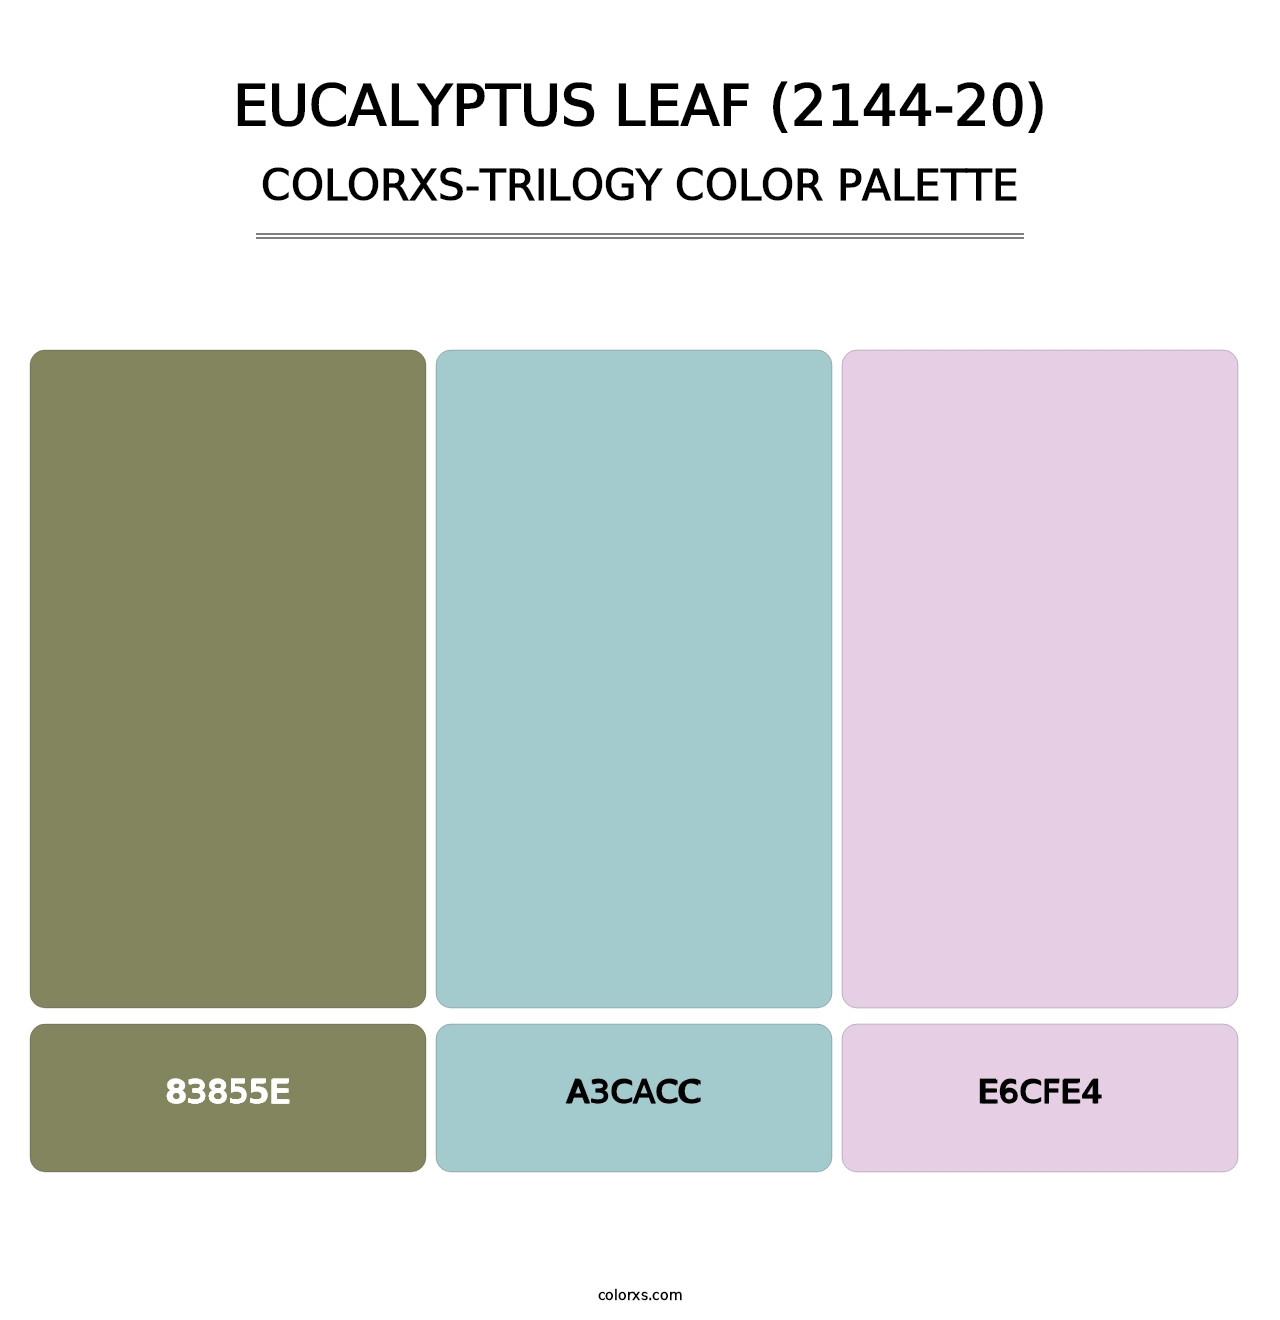 Eucalyptus Leaf (2144-20) - Colorxs Trilogy Palette